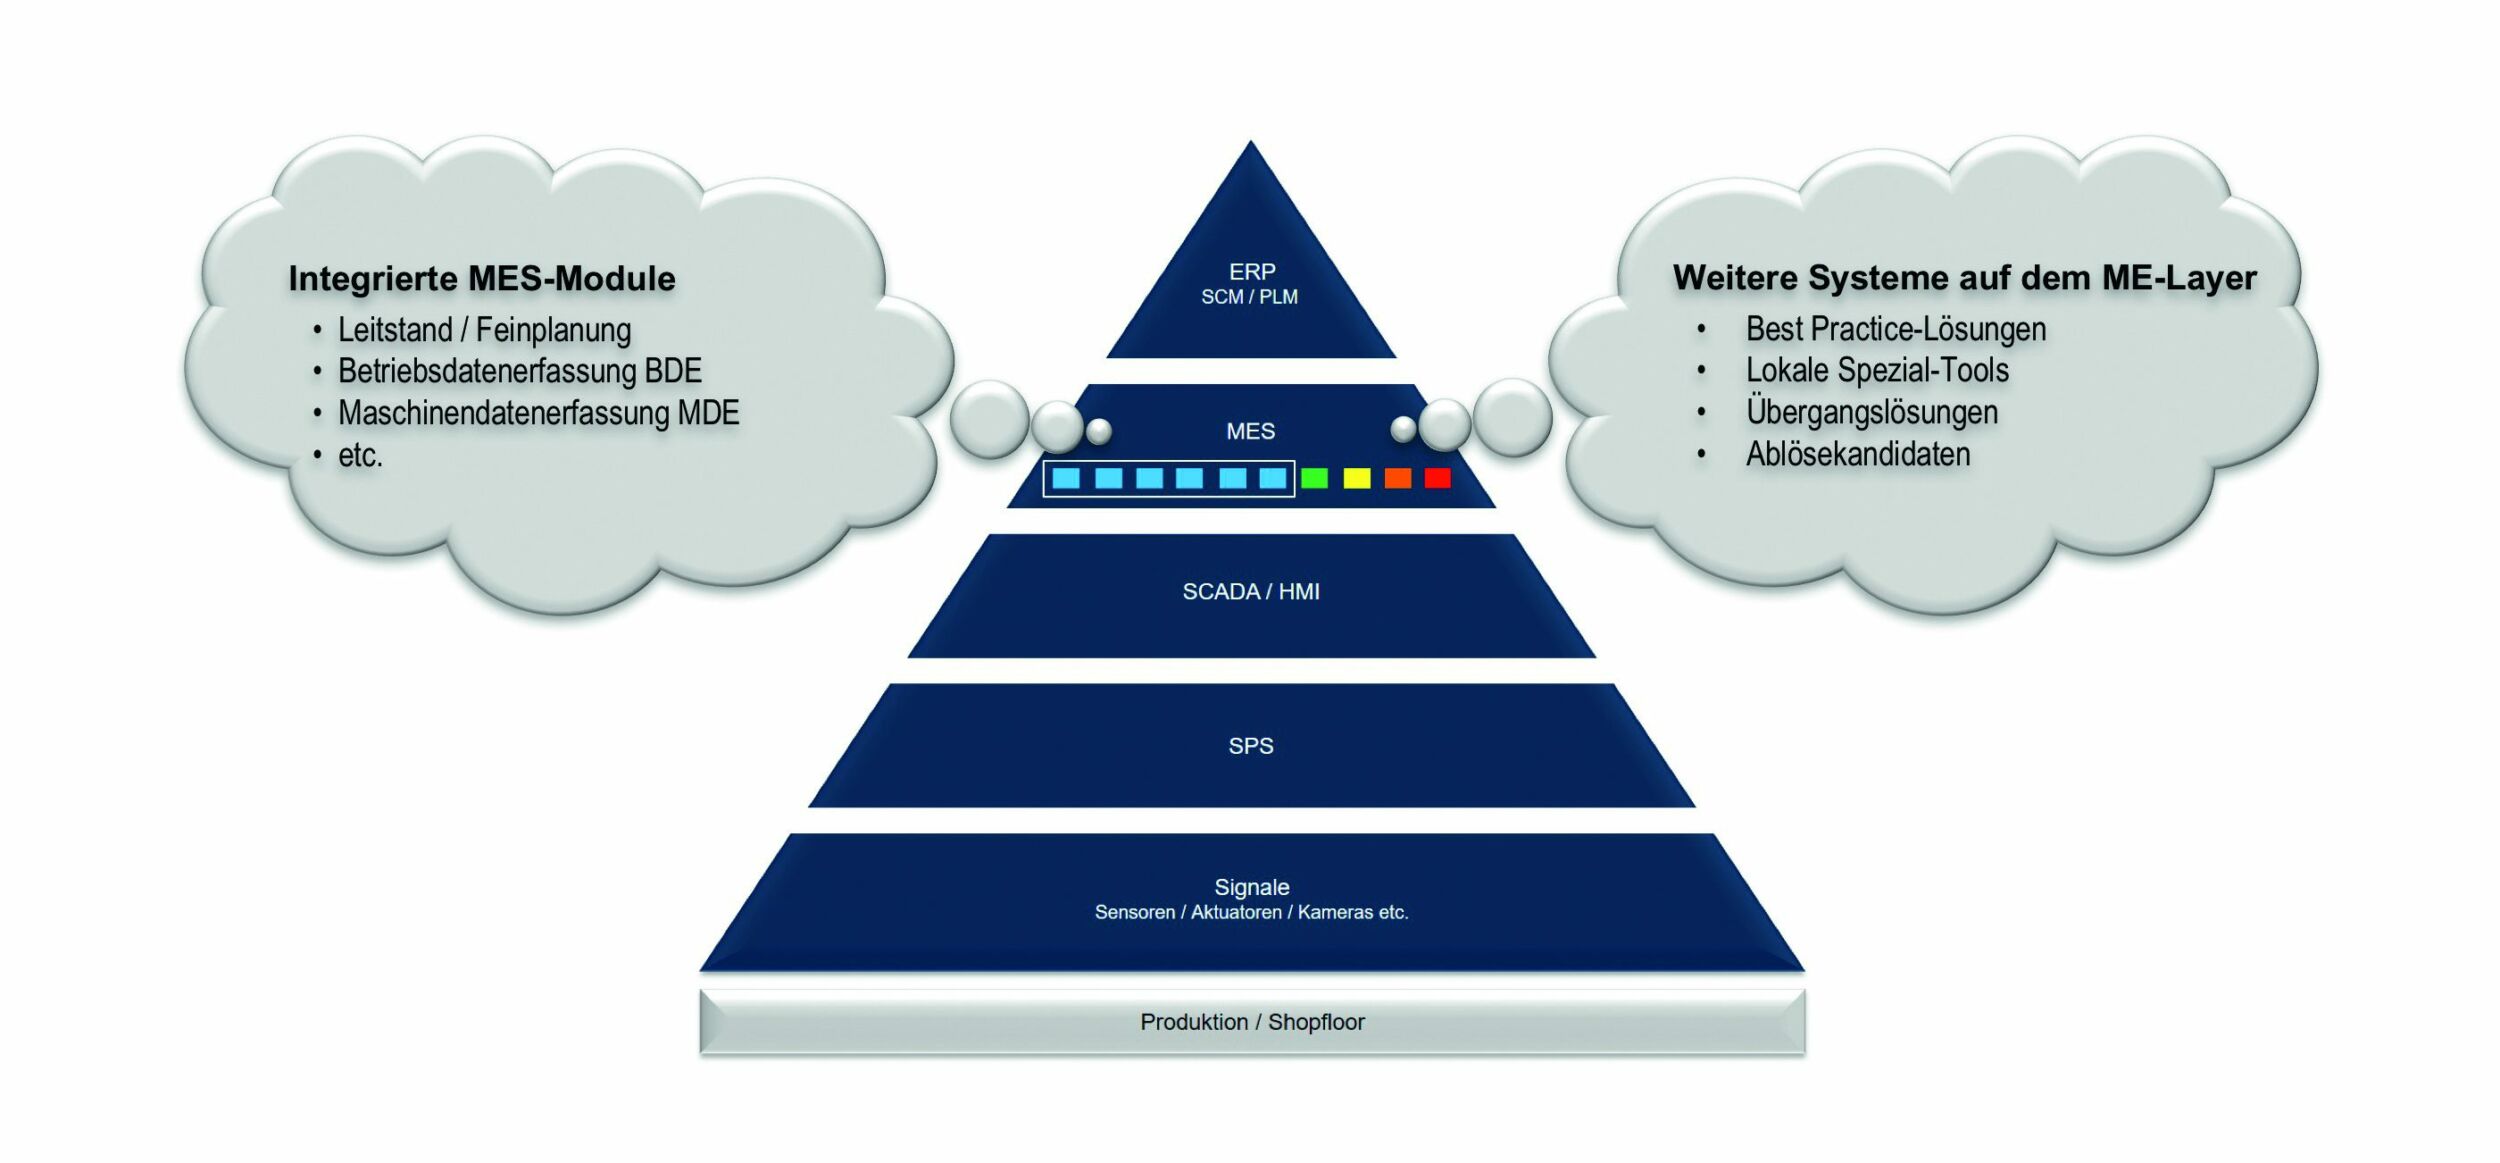 MES in der Automatierungspyramide. Bild zeigt die MES-Aufgaben und Klassifizierung